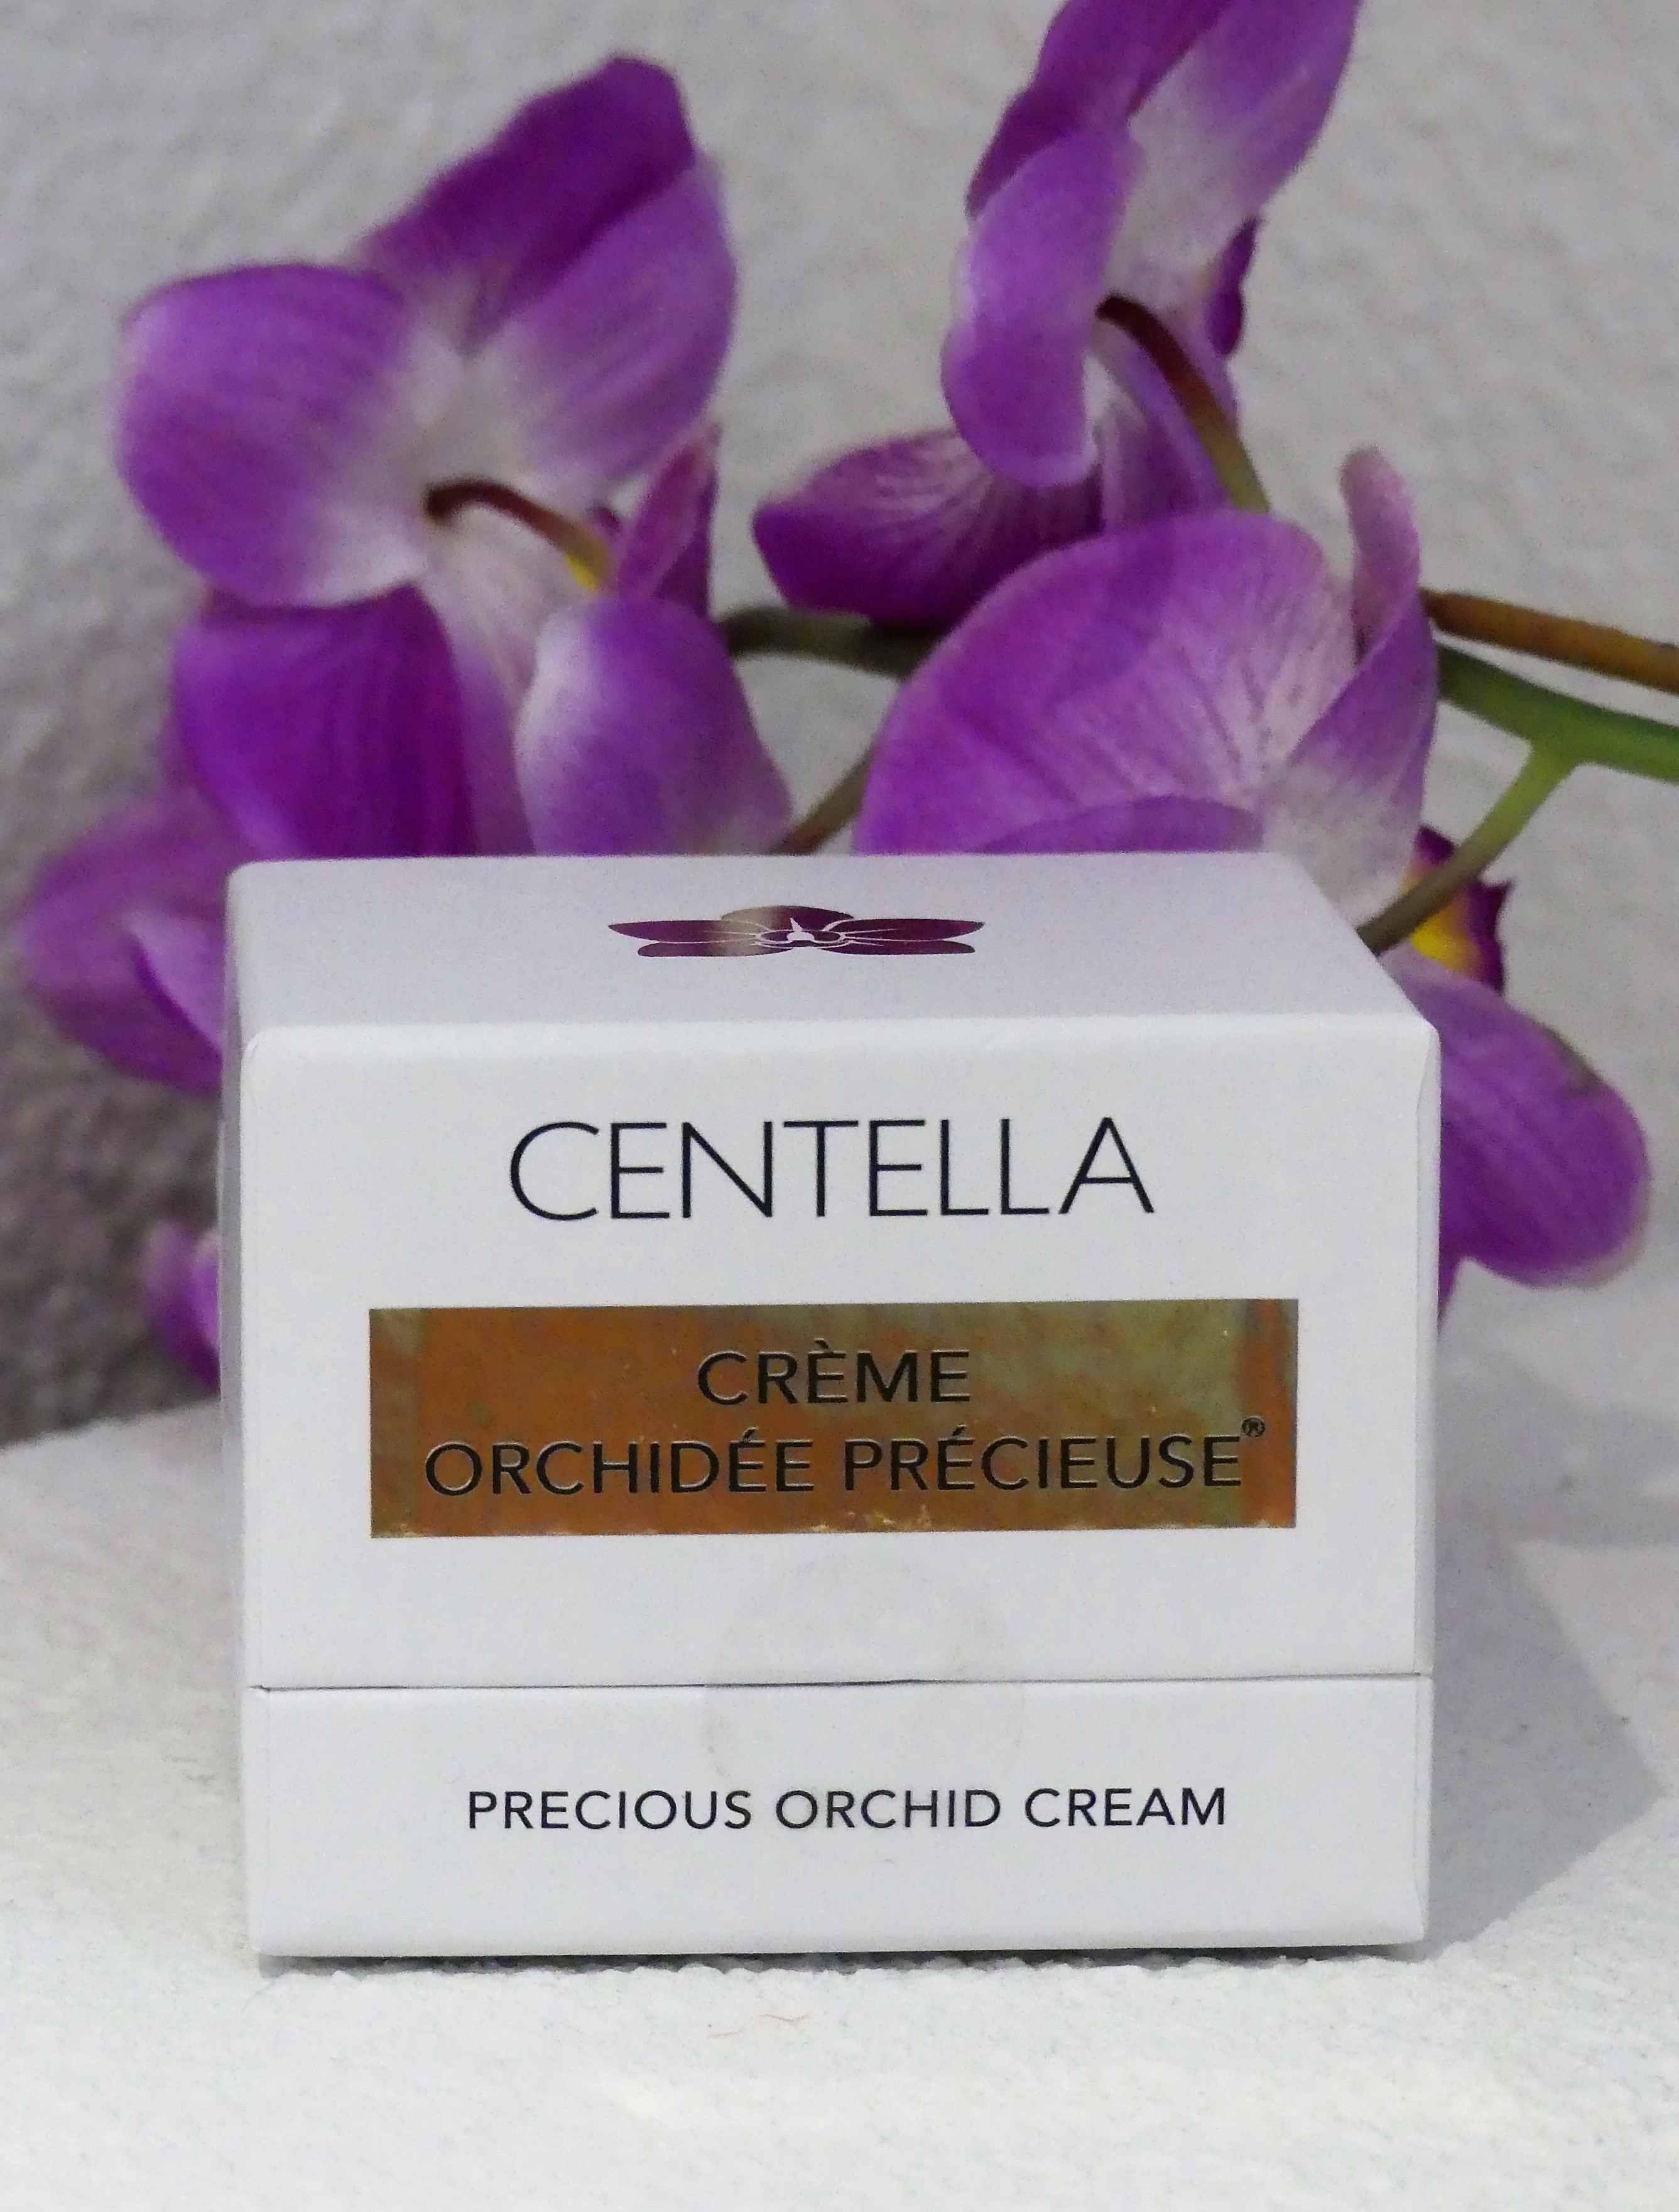 La nouvelle Crème Orchidée Précieuse de chez Centella - Laboratoires Roig